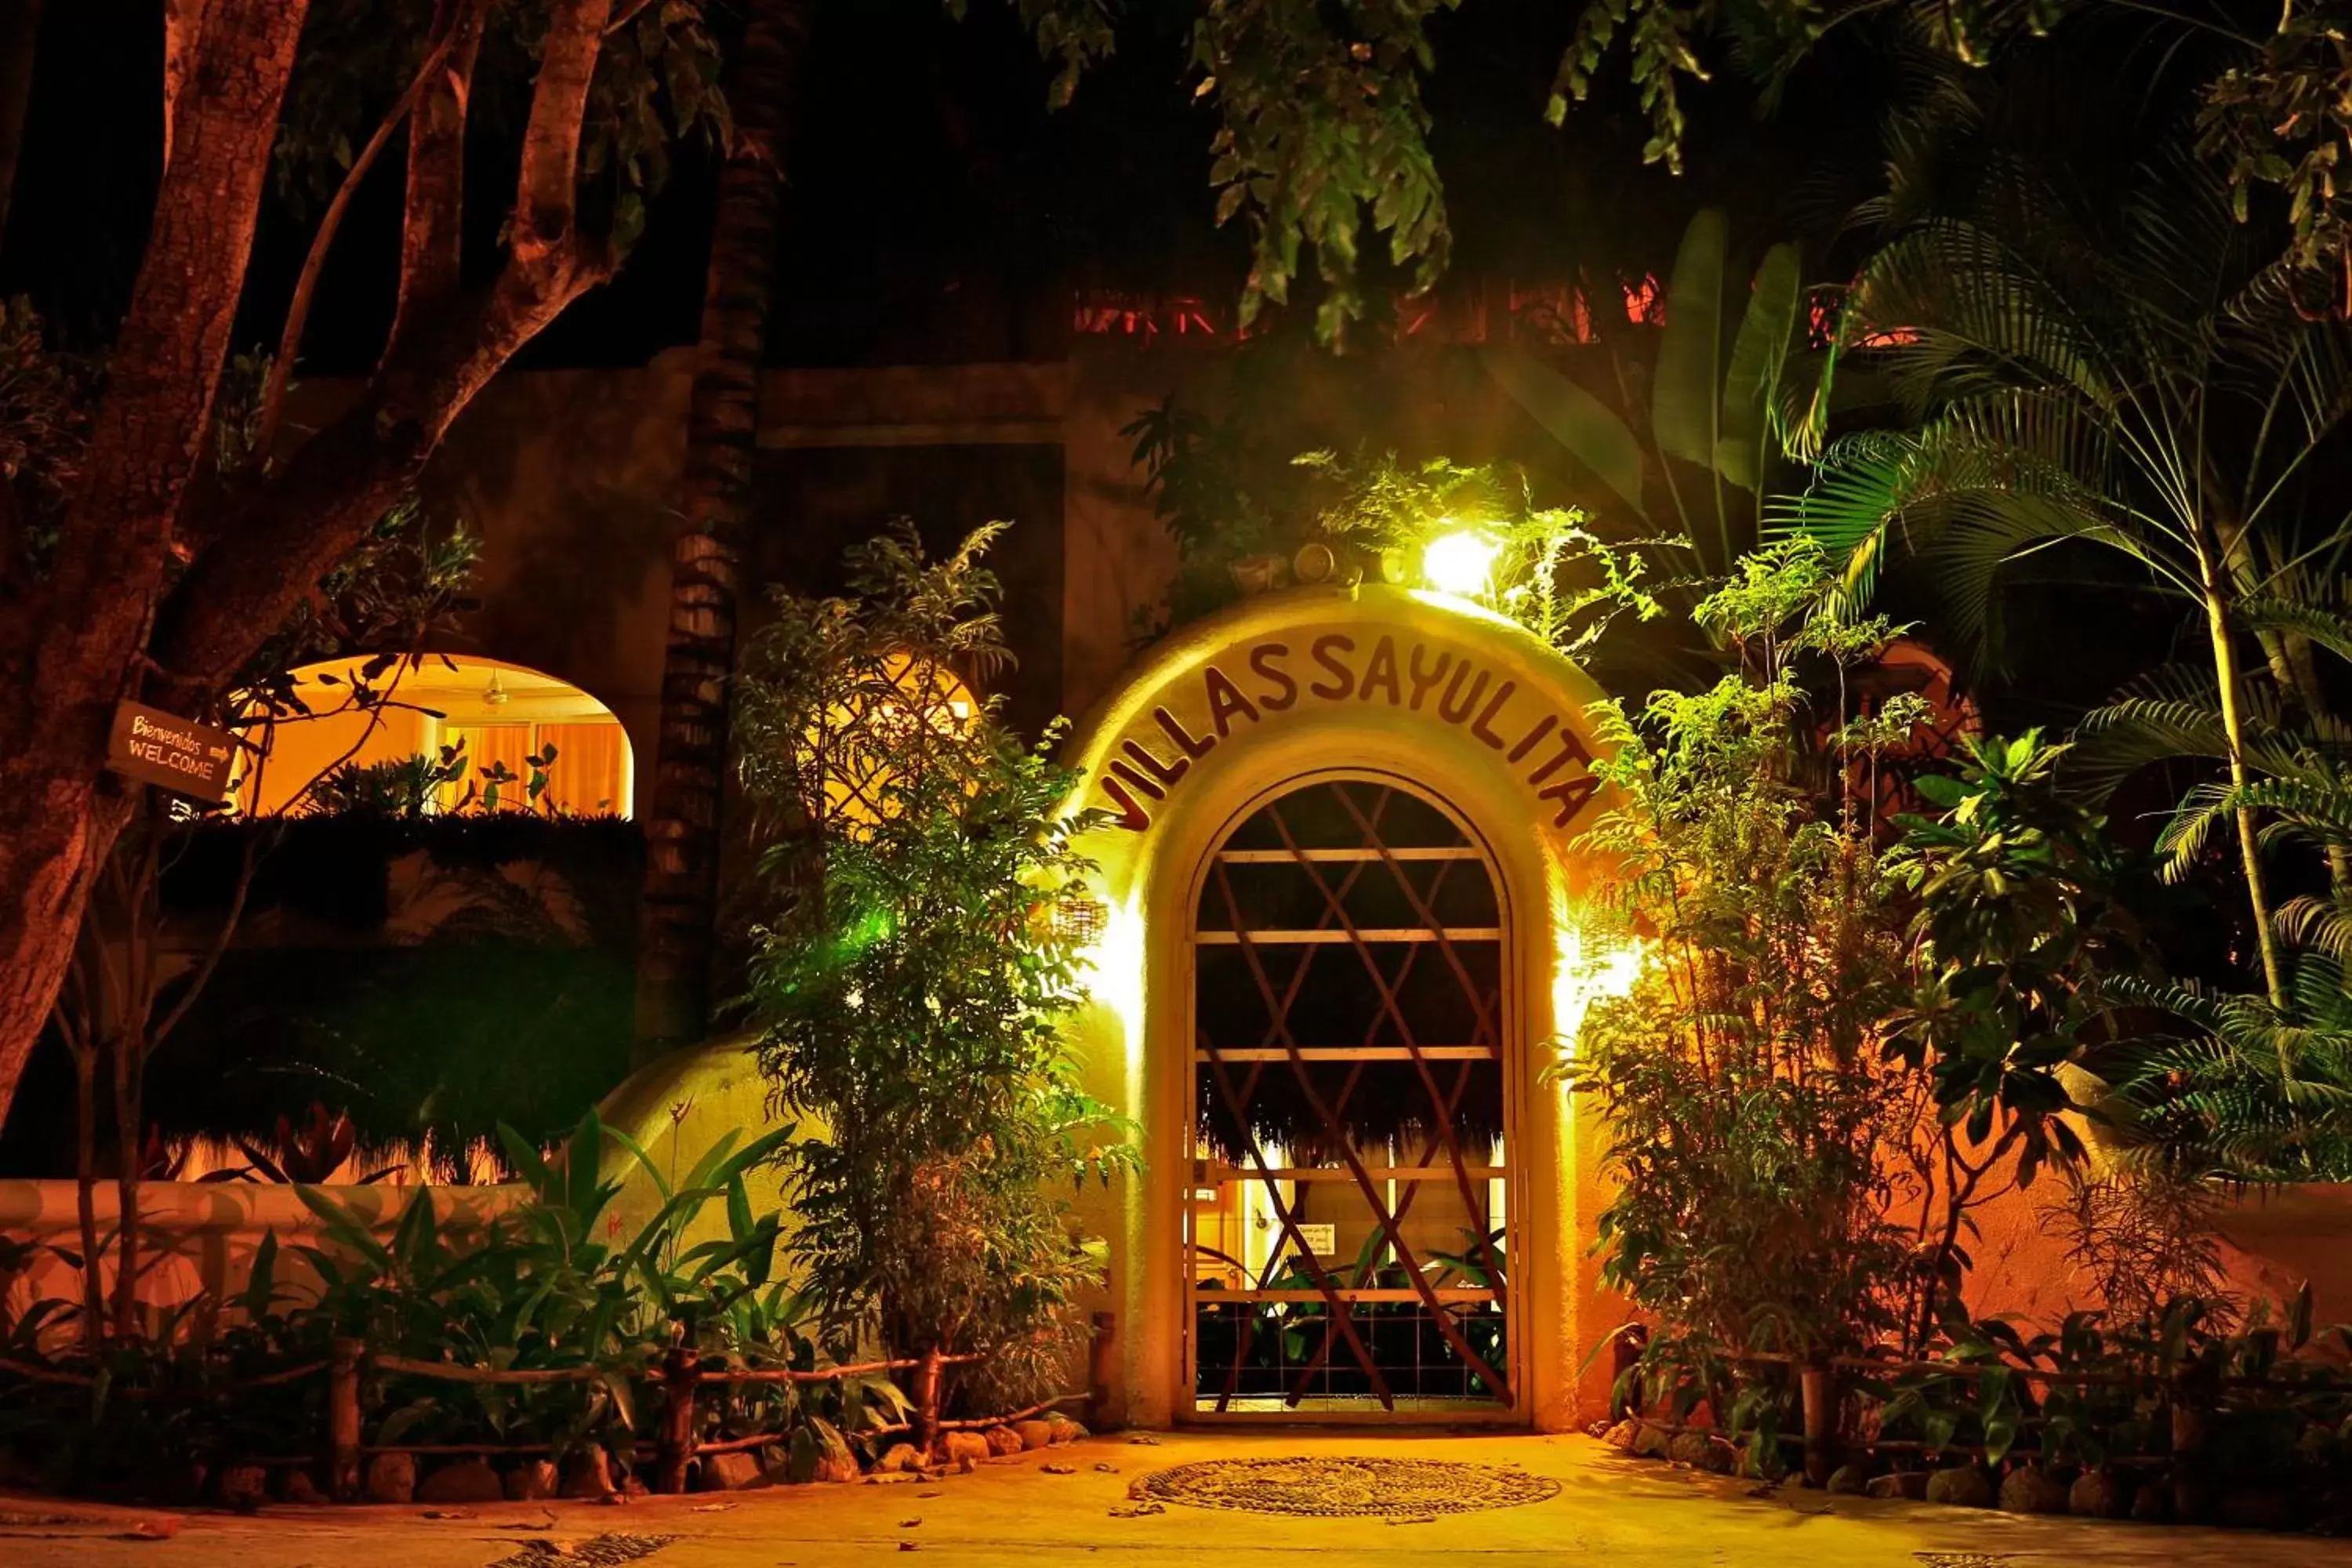 Facade/Entrance in Hotel Villas Sayulita